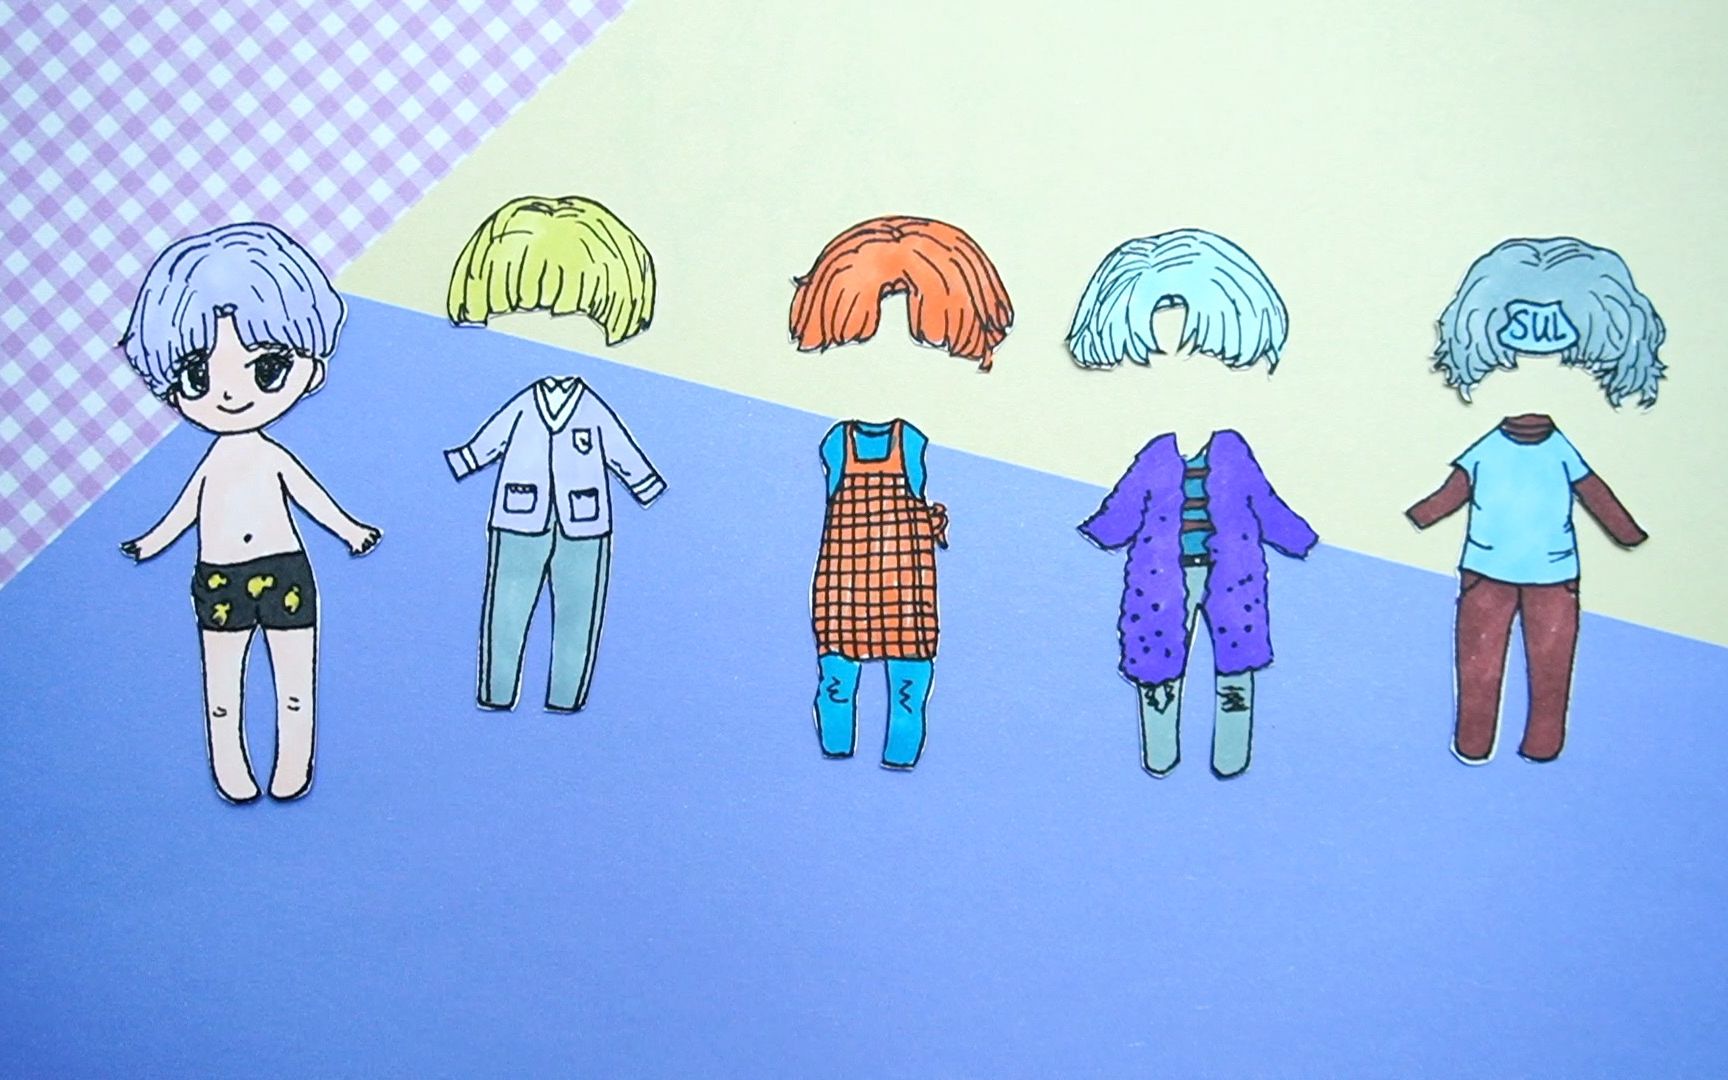 纸娃娃创意手工:制作可爱小男孩,还有四款不同风格衣服和发型